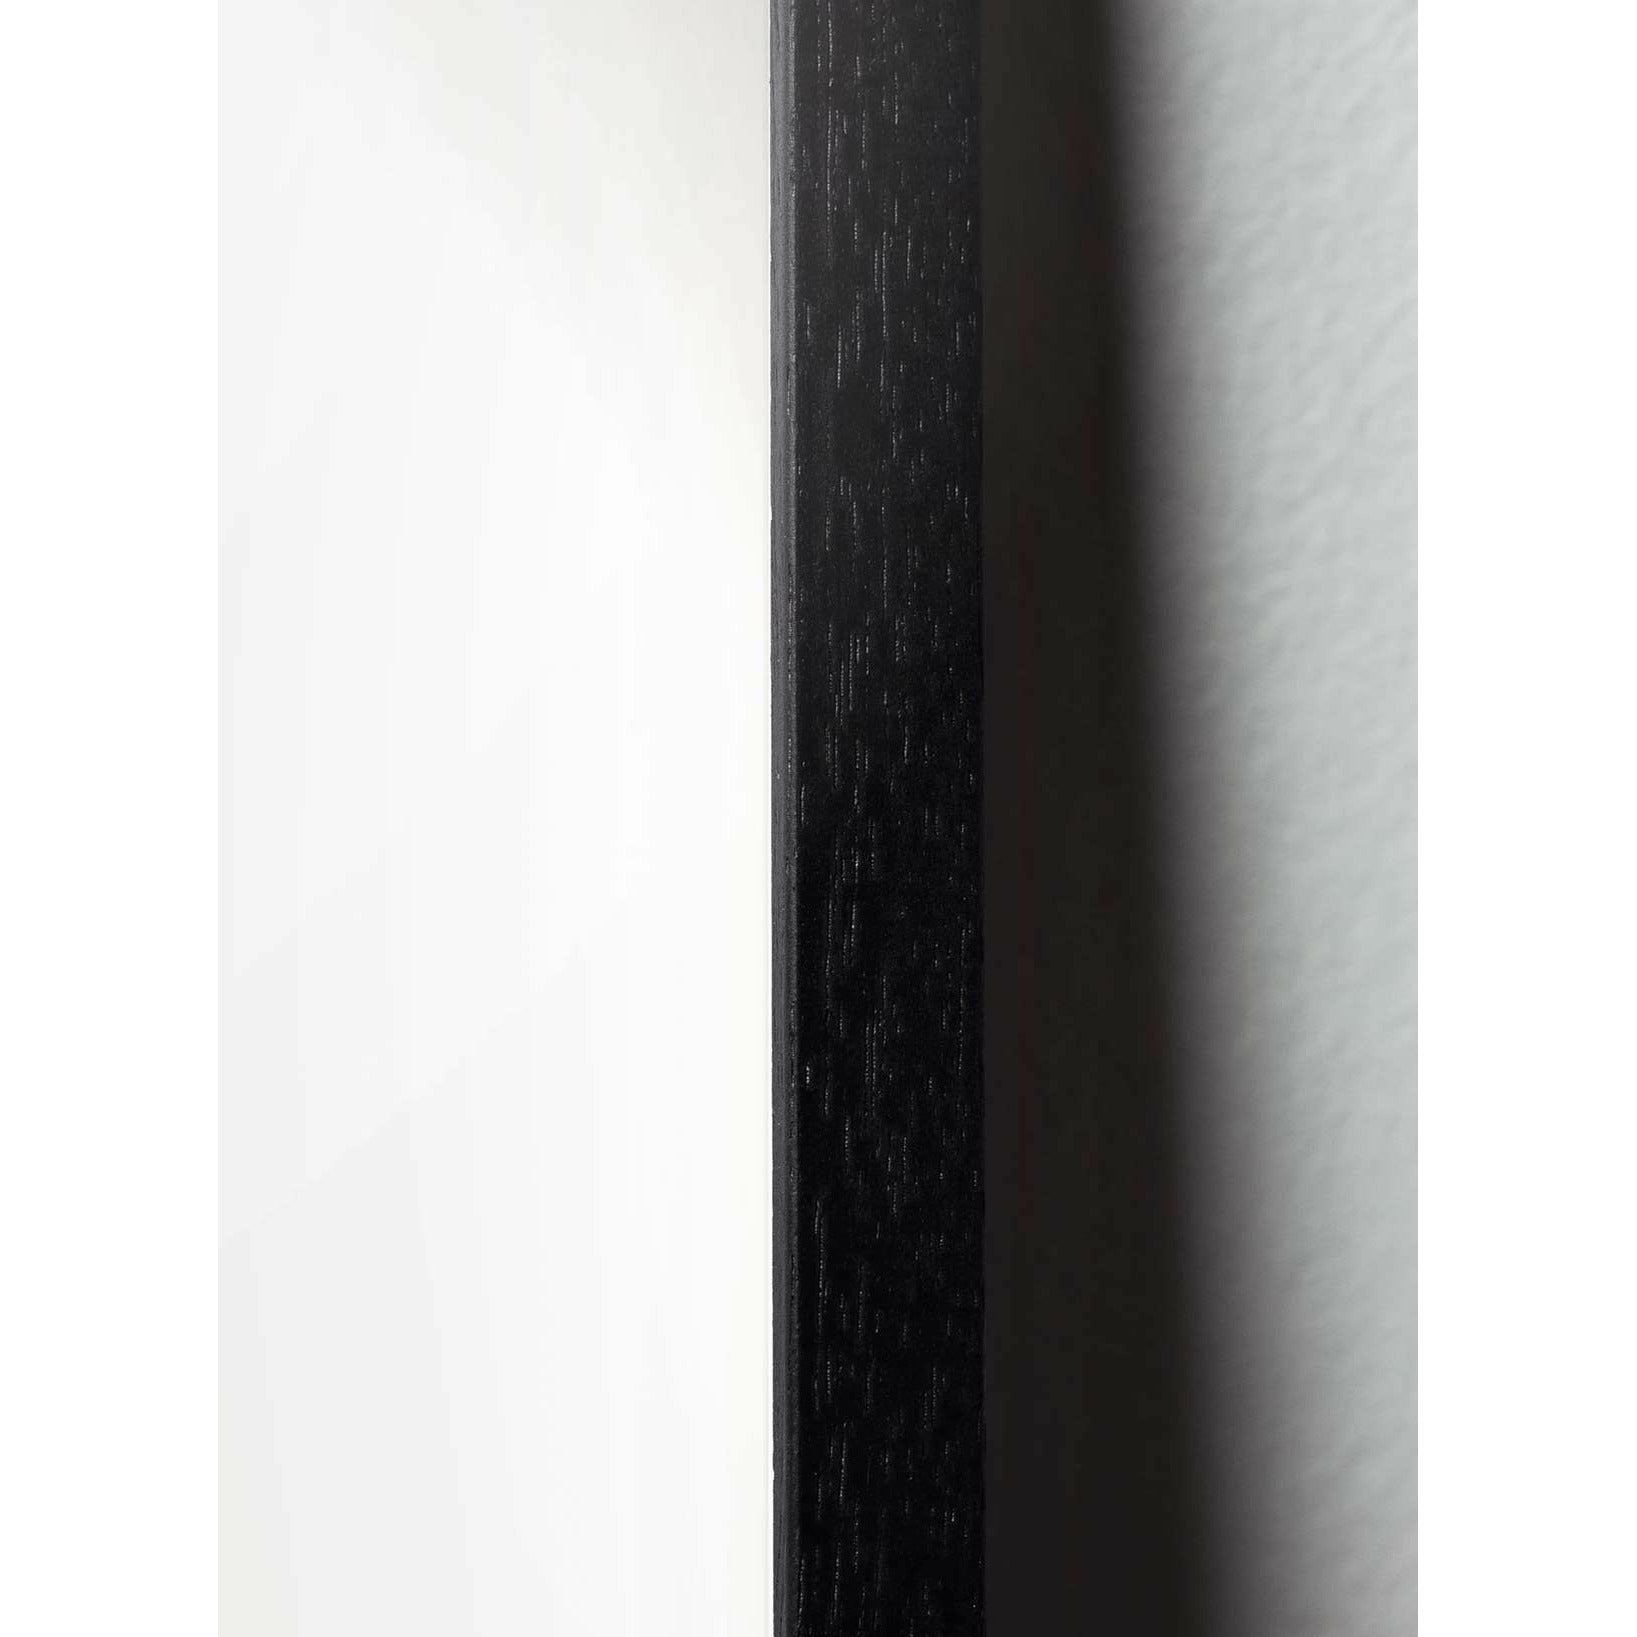 brainchild Snow -SoWrop -klassischer Poster, Rahmen im schwarz lackierten Holz 30x40 cm, grüner Hintergrund